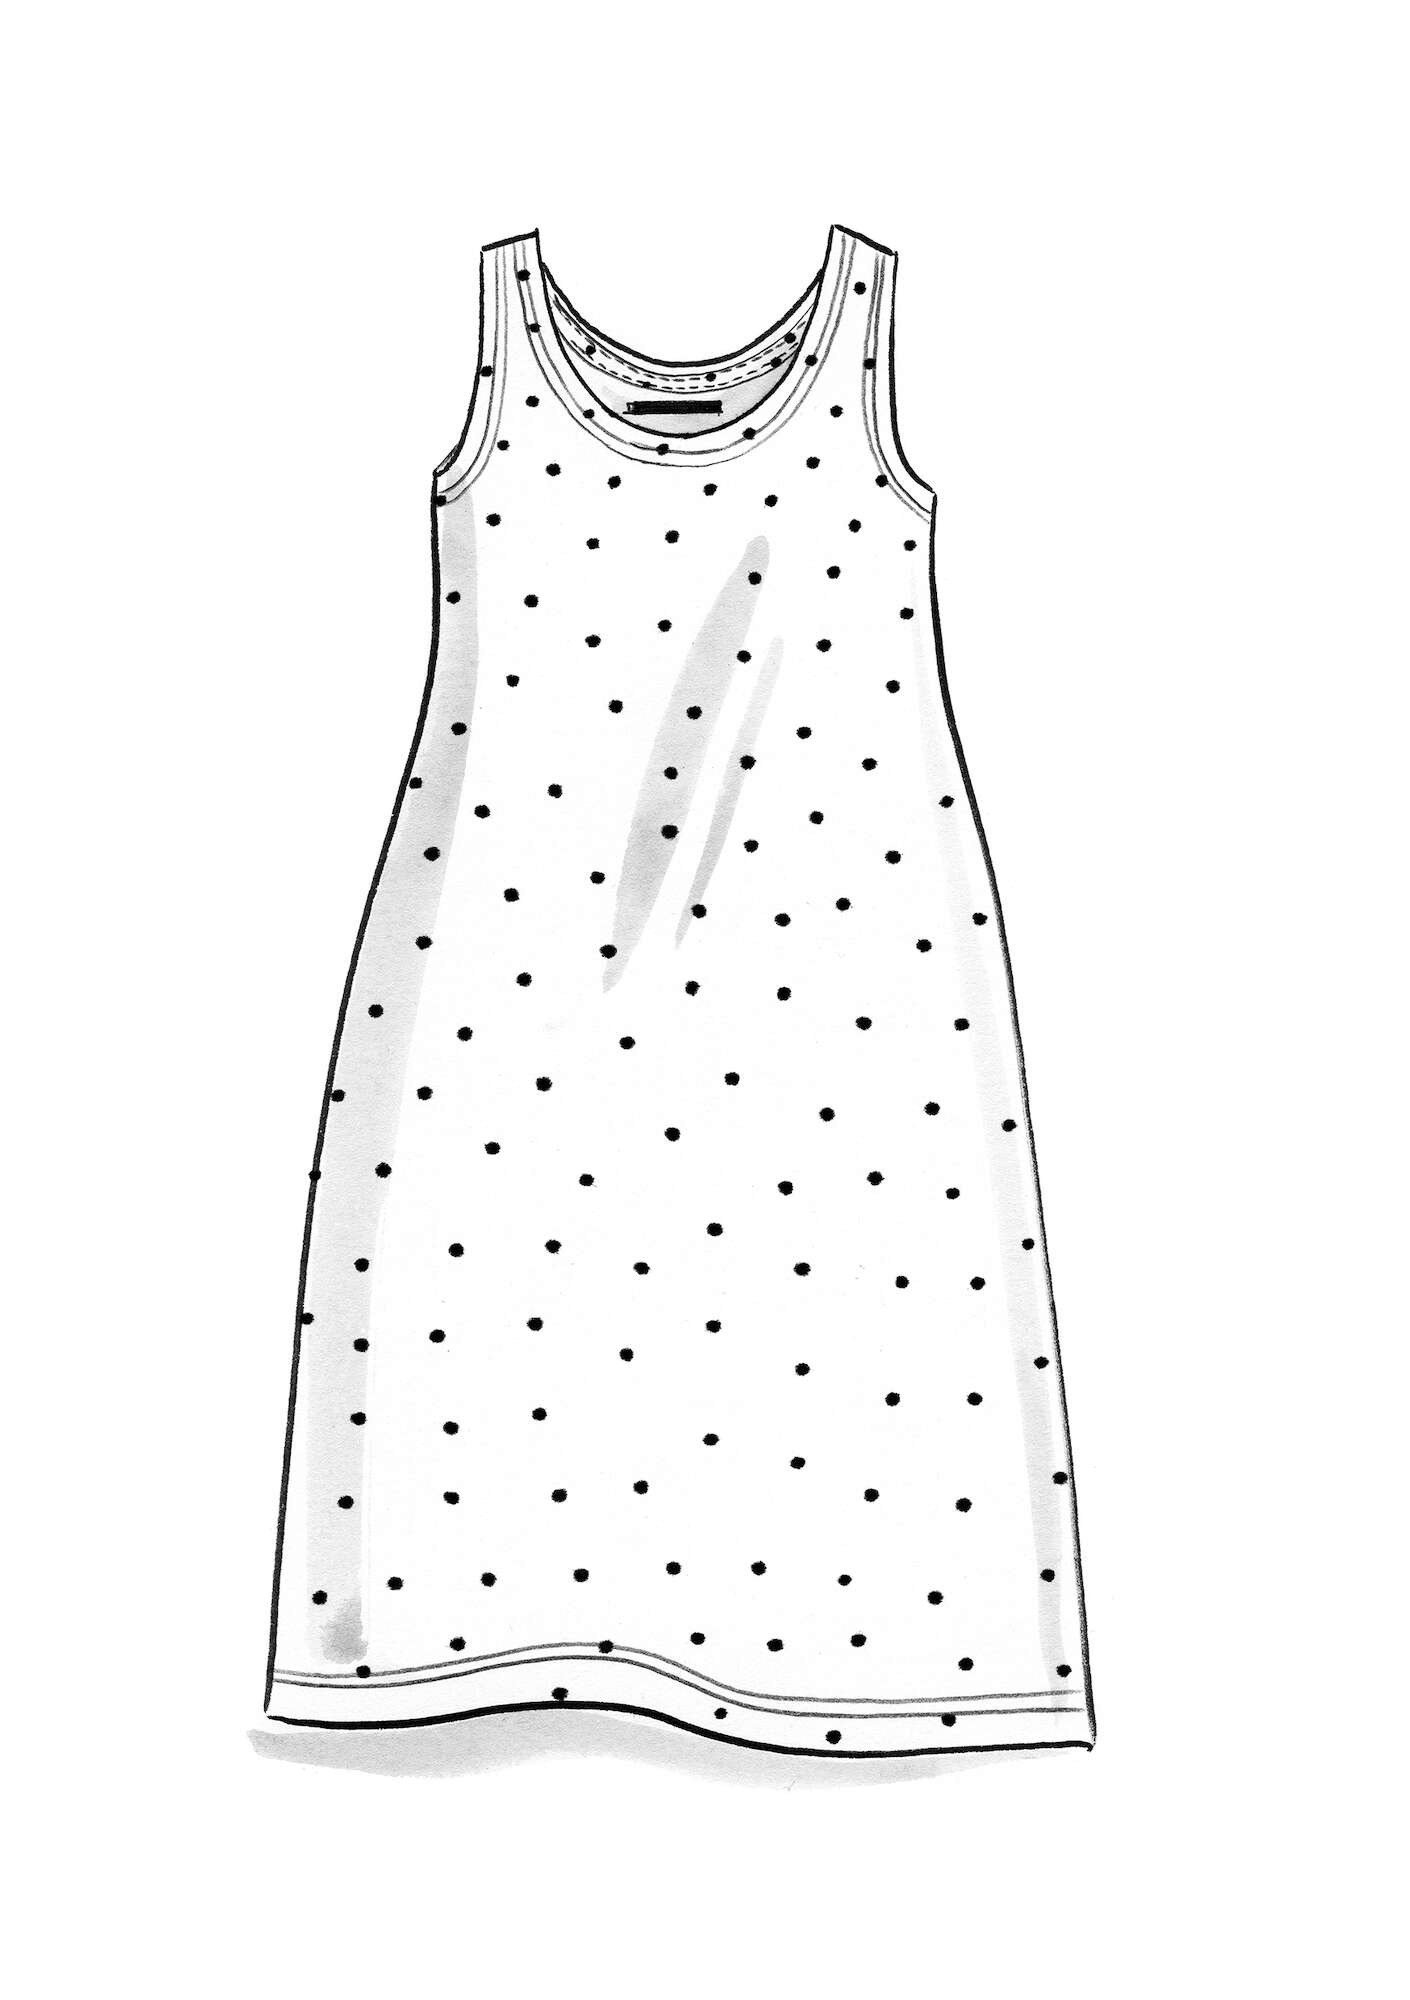 Tricot jurk  Pytte  van lyocell/elastaan zwart/ongebleekt